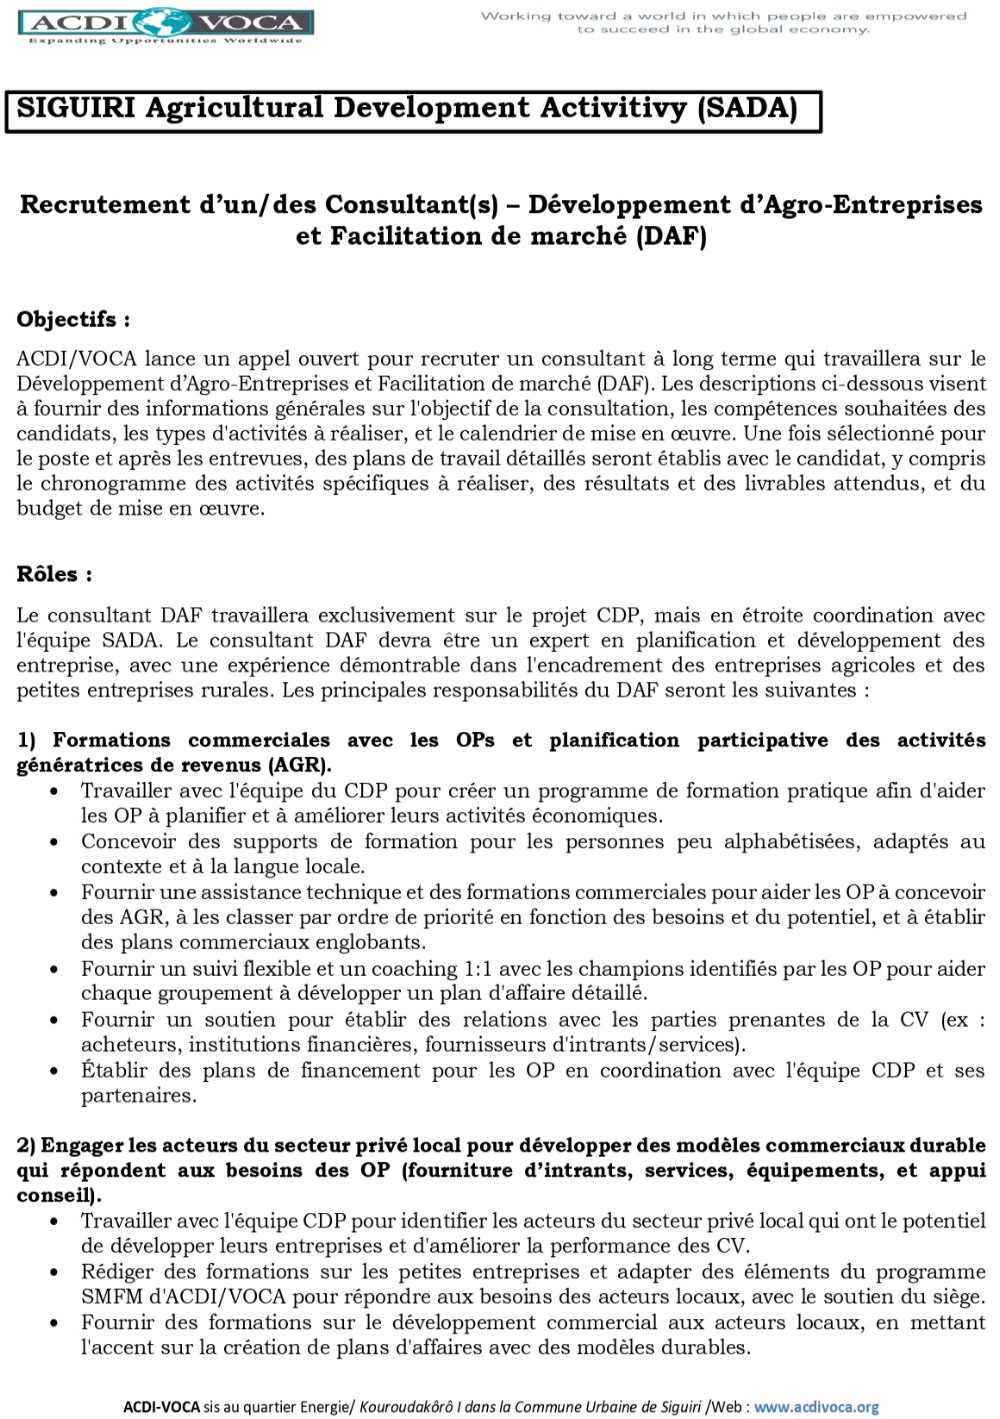 ACDI/VOCA – Avis de recrutement d’un / des Consultant(s) – Développement d’Agro-Entreprises et Facilitation de marché (DAF) p1